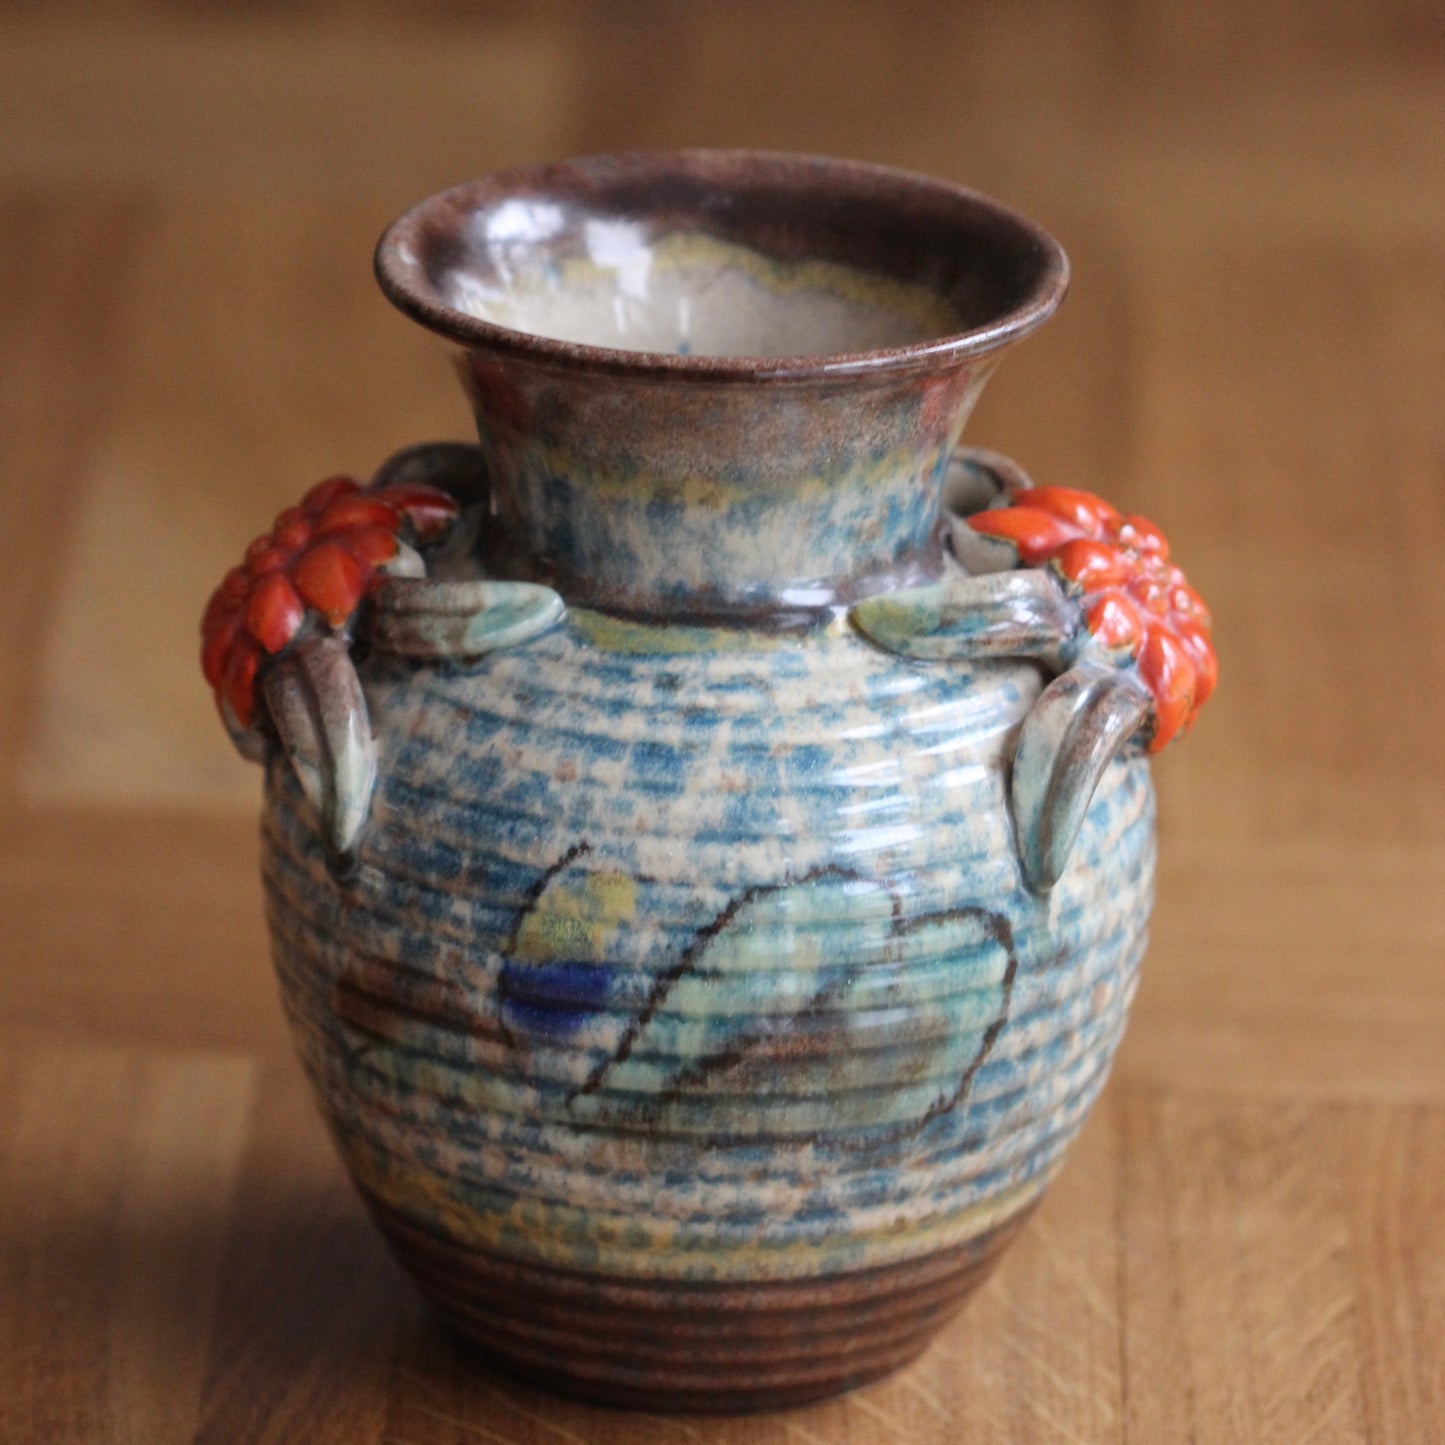 Vase tysk keramikk - retro